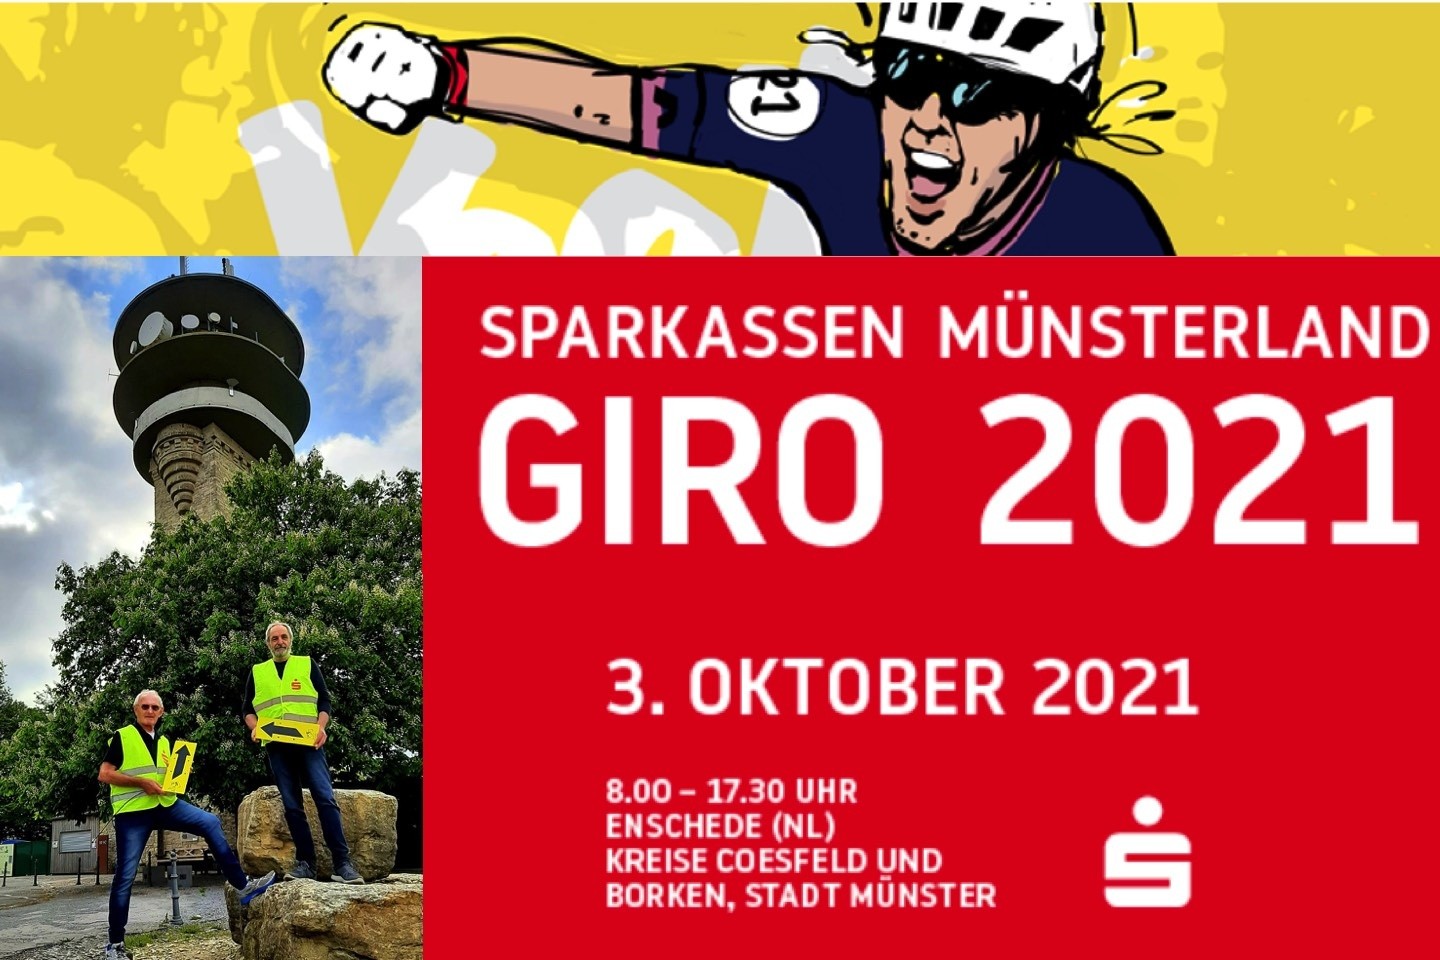 Sparkassen Münsterland,Giro 2021,Radfahren,Münsterland,Radrennen,